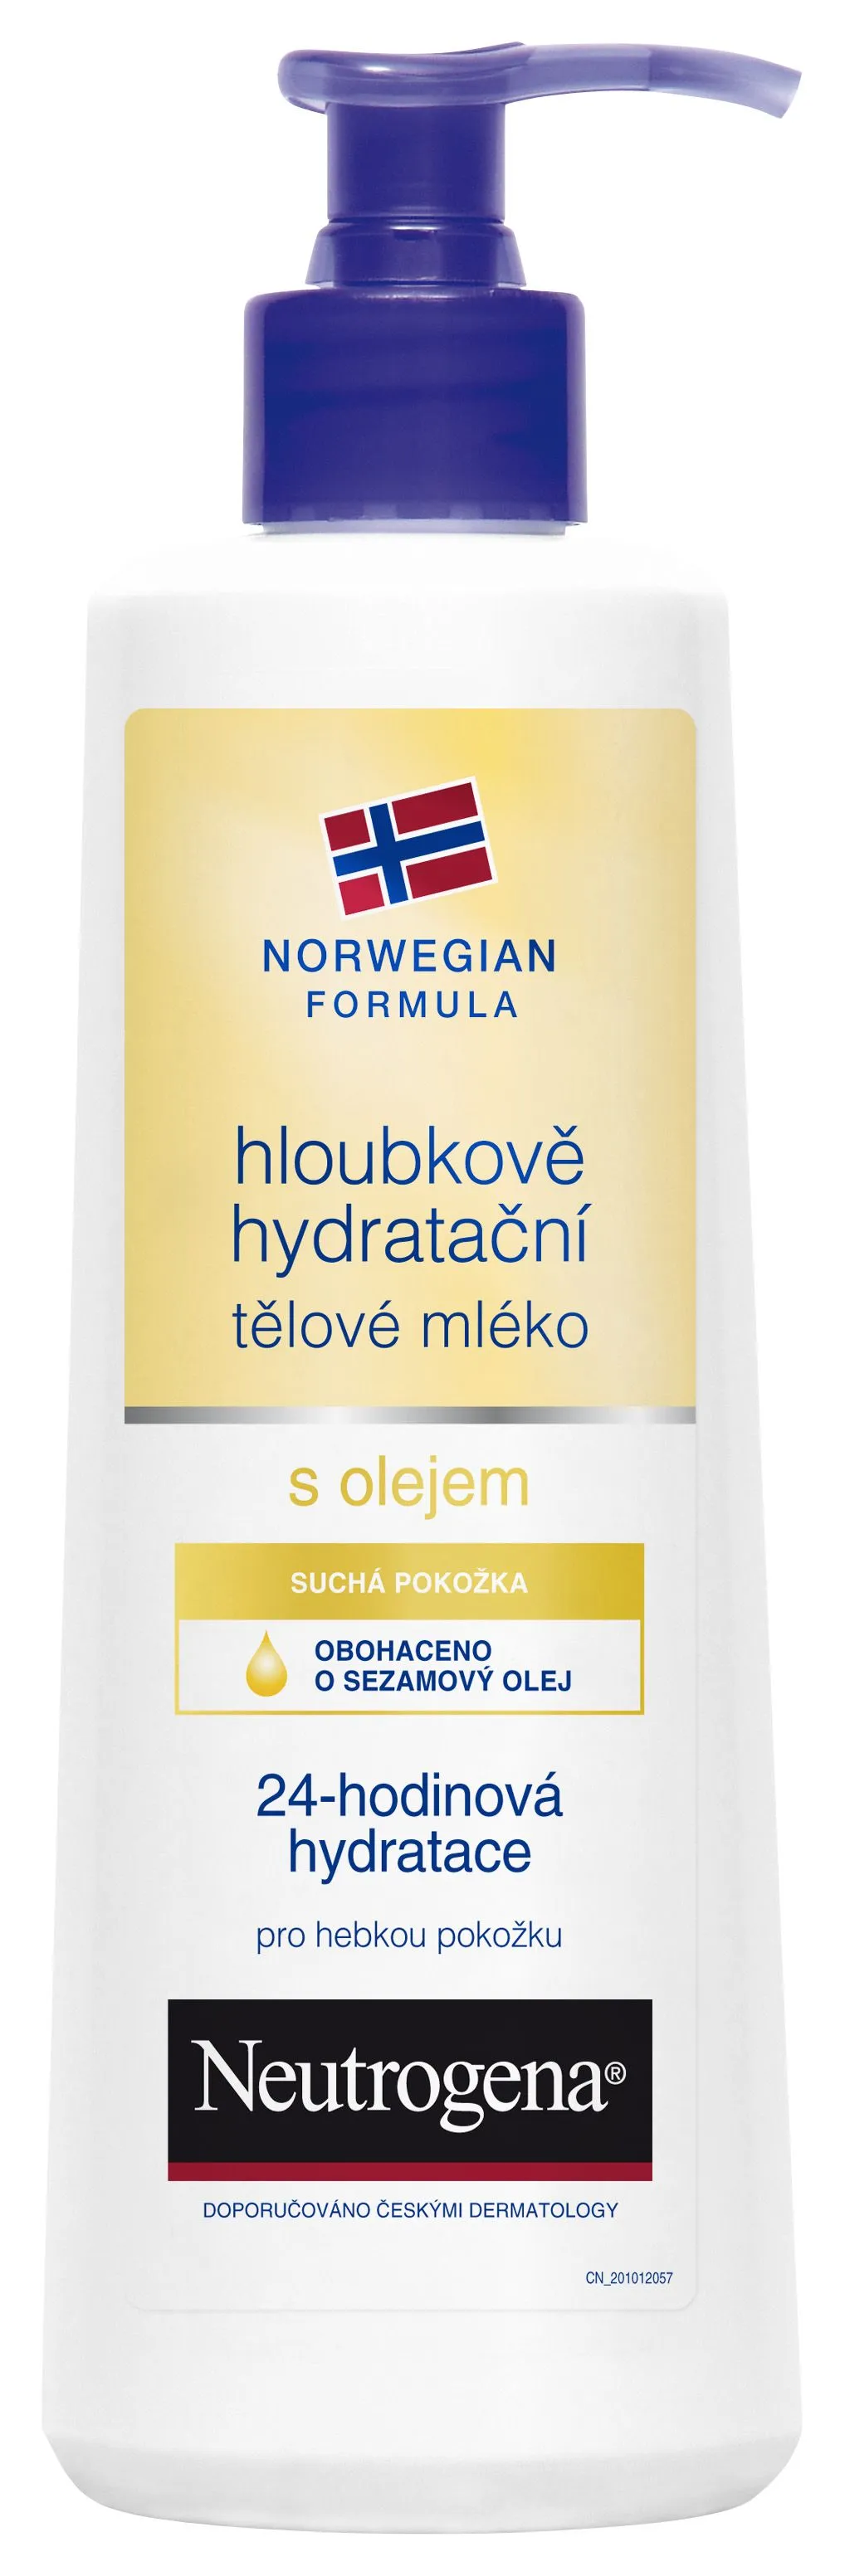 Neutrogena Hloubkově hydratační tělové mléko s olejem 250 ml